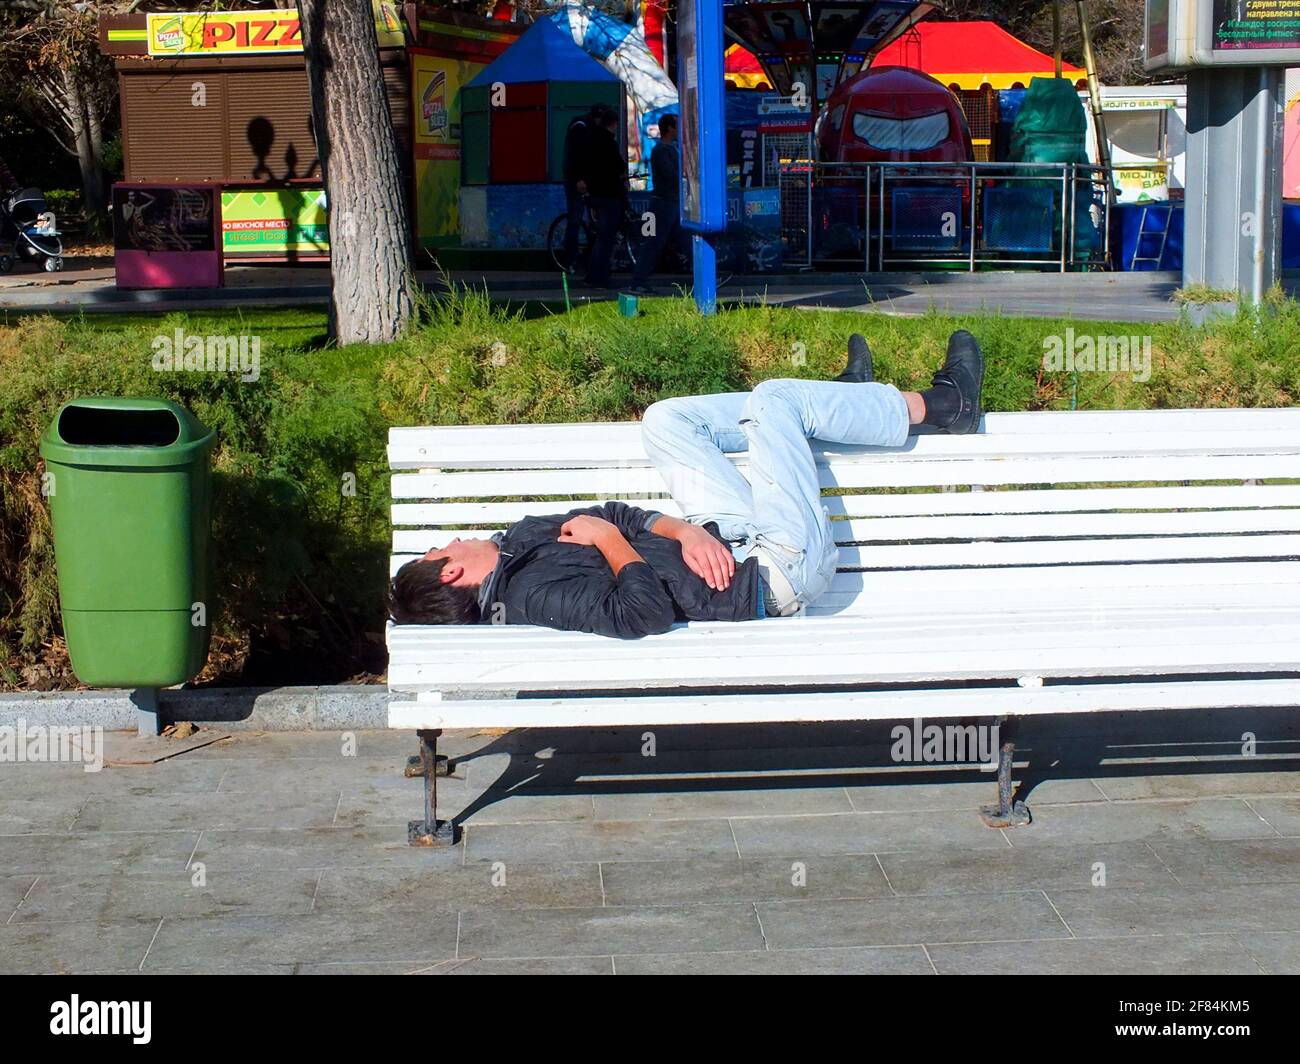 UKRAINE, JALTA - 29. JULI 2015: Obdachloser in Jeans und schwarzer Jacke schläft auf einer weißen Bank in der Nähe des grünen Mülltonnen auf der Straße. Stockfoto